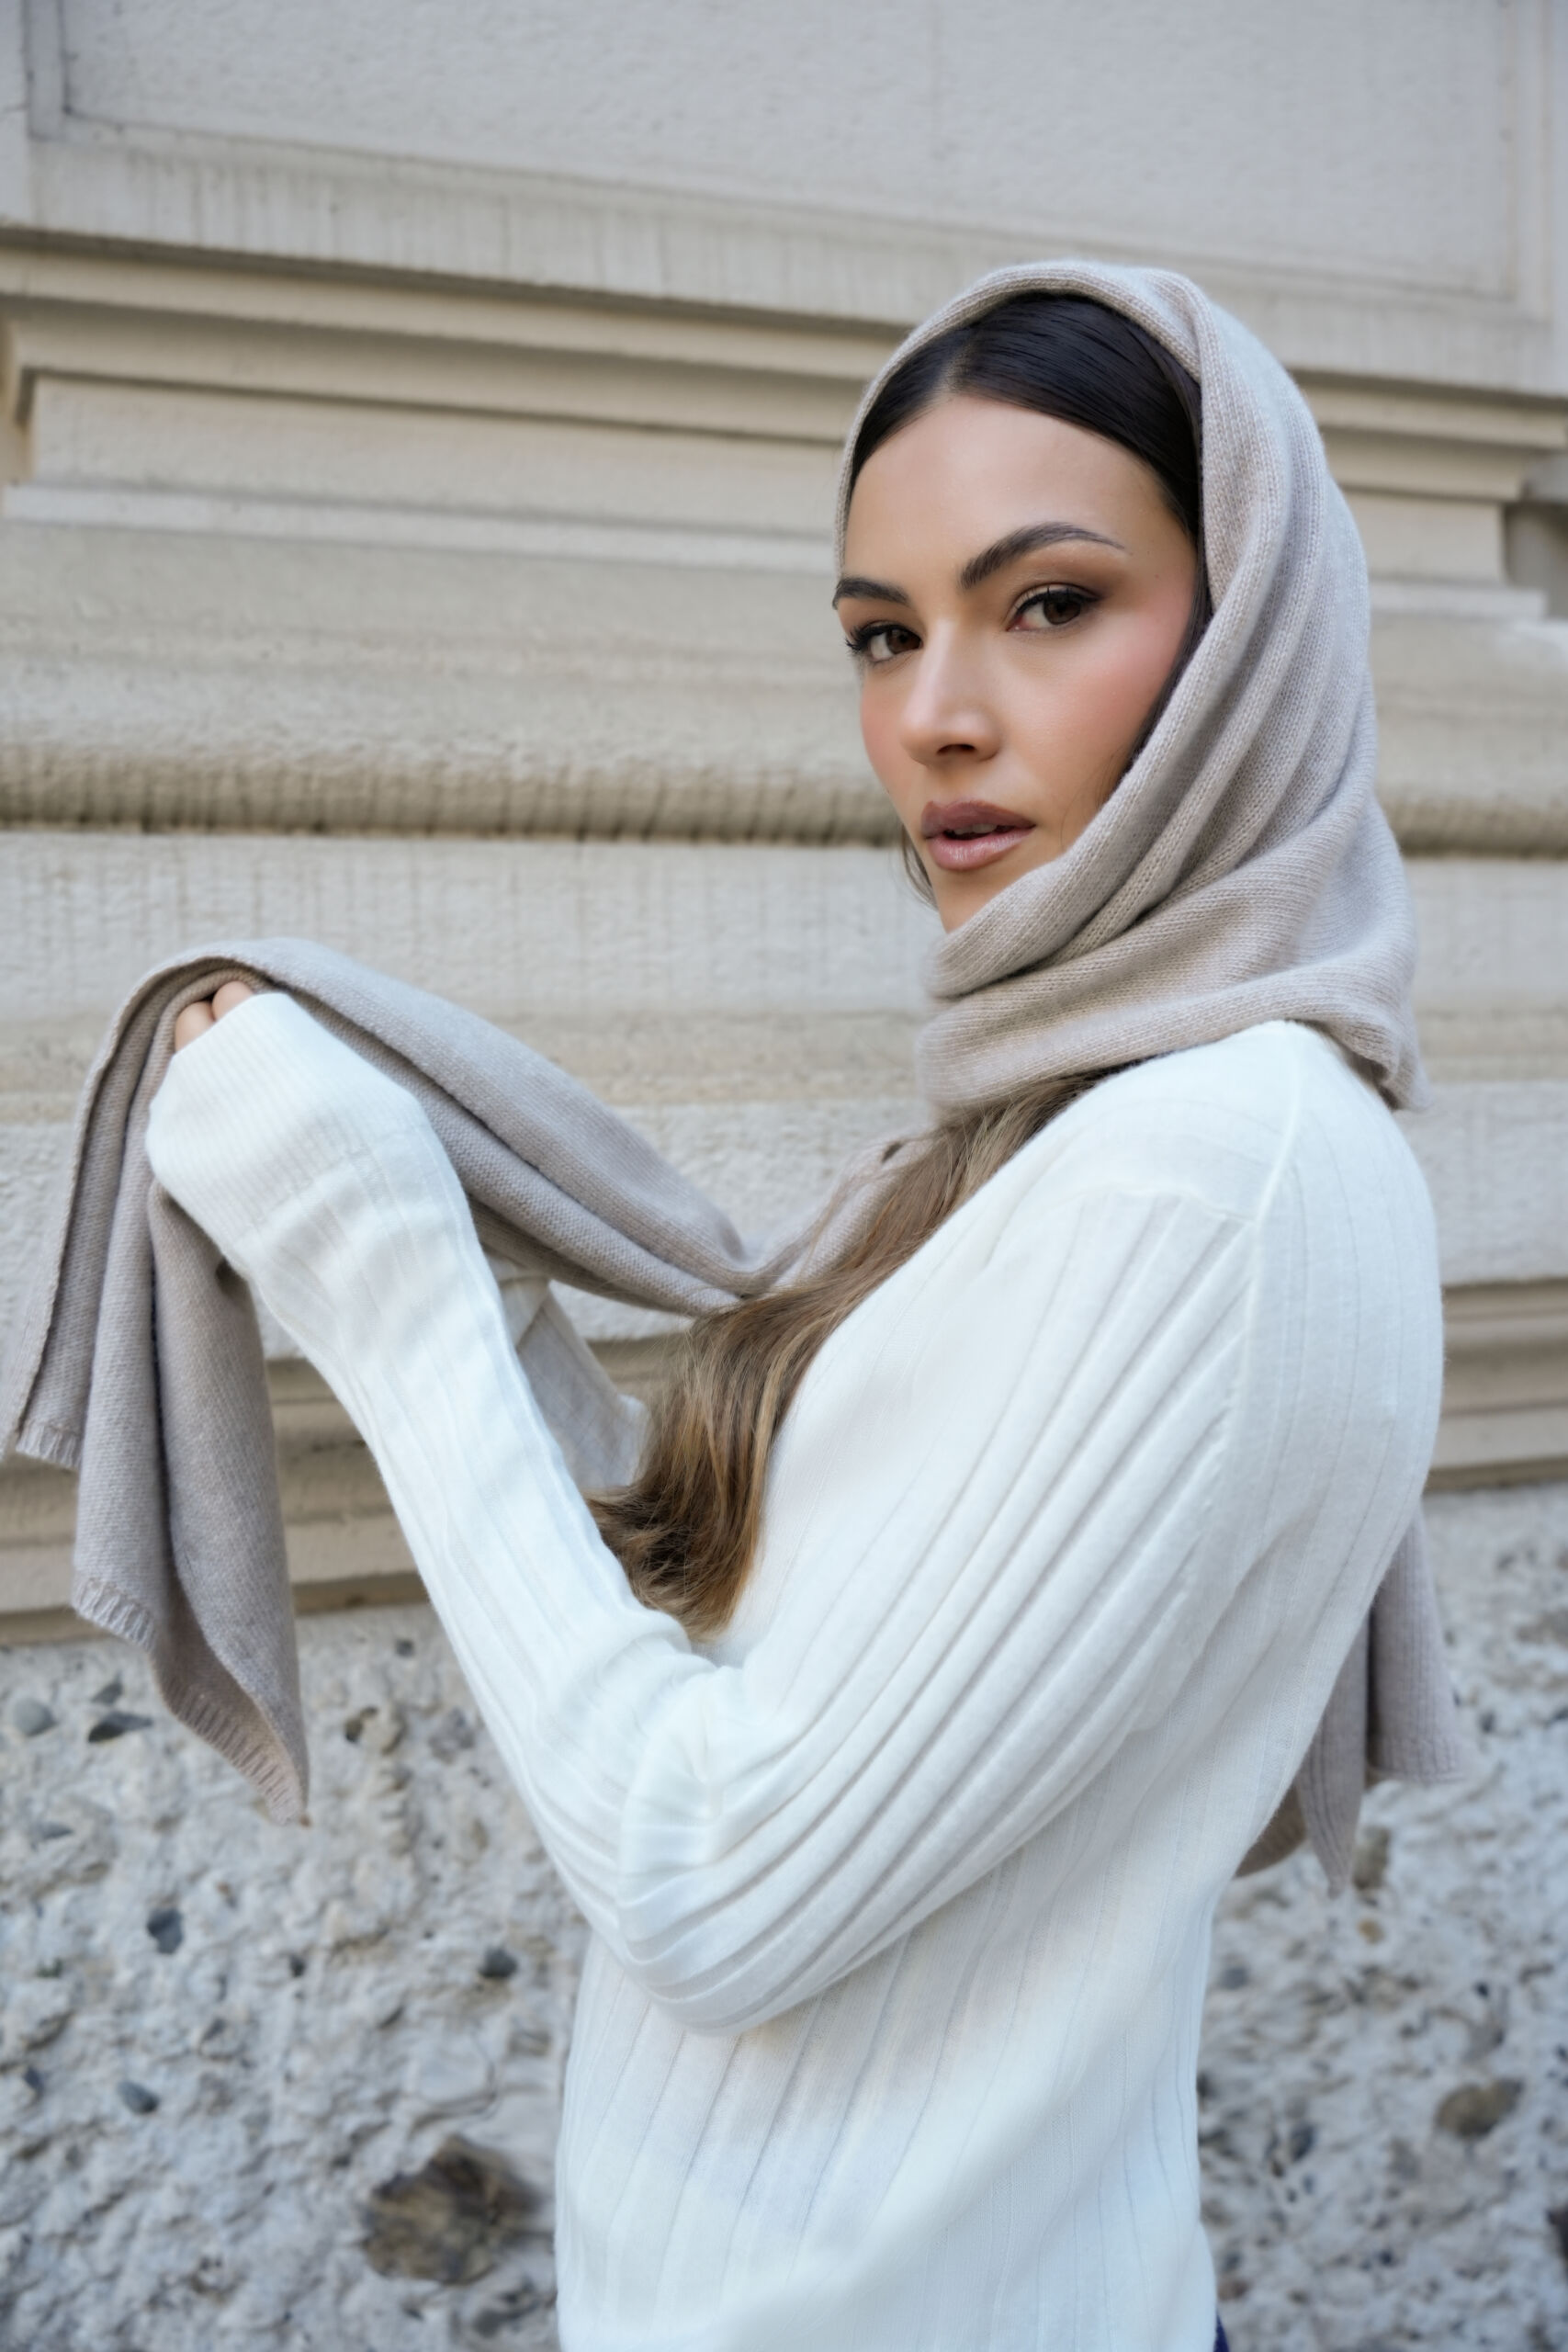 Trieste Beige 2 scaled 1stAmerican sciarpa da donna misto cashmere misura 45 x 215 - sciarpa invernale in misto cashmere 100% Made in Italy